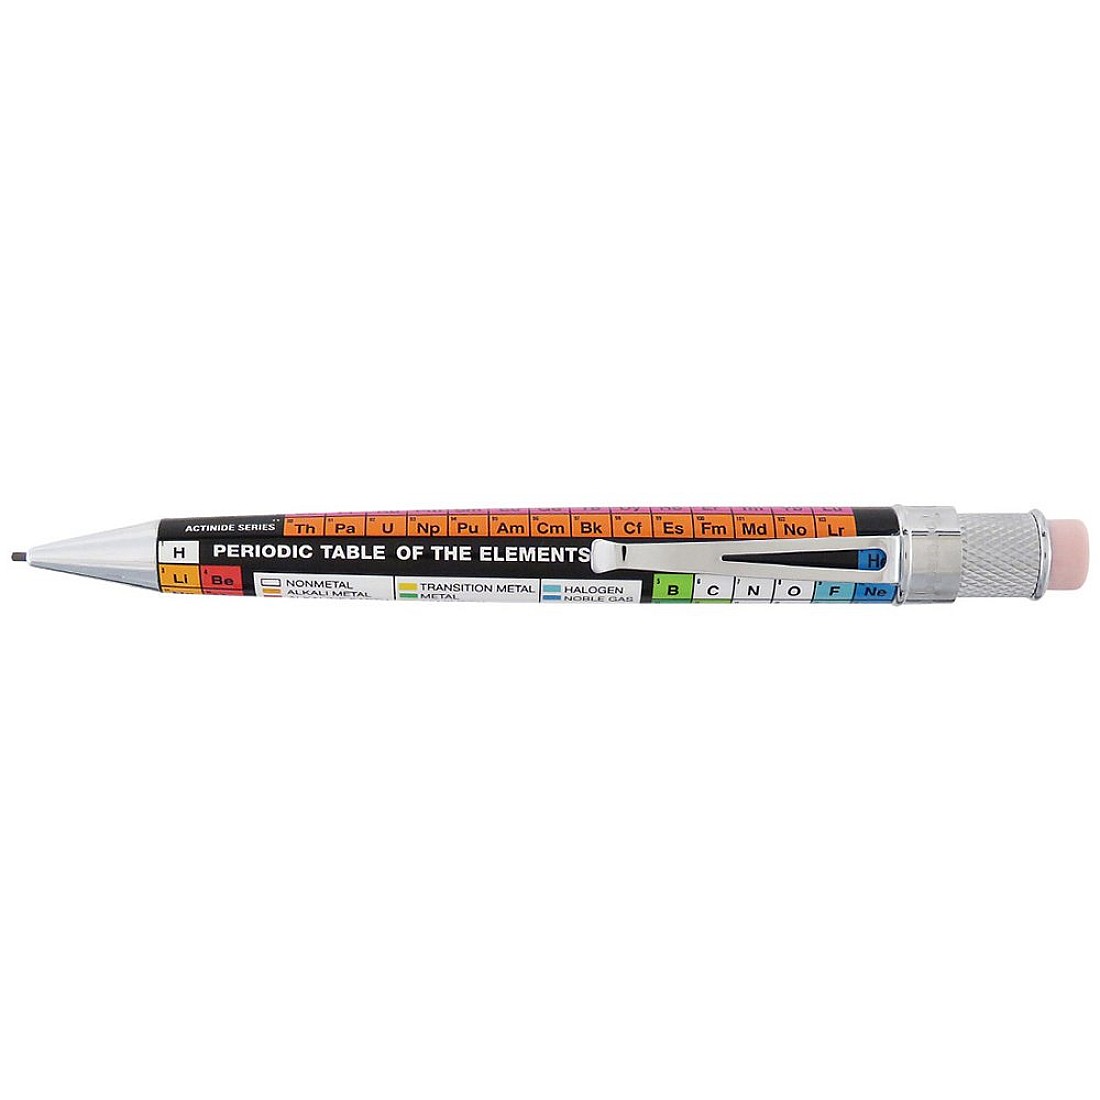 Retro 51 Tornado Dmitri Mechanical pencil 1.15mm